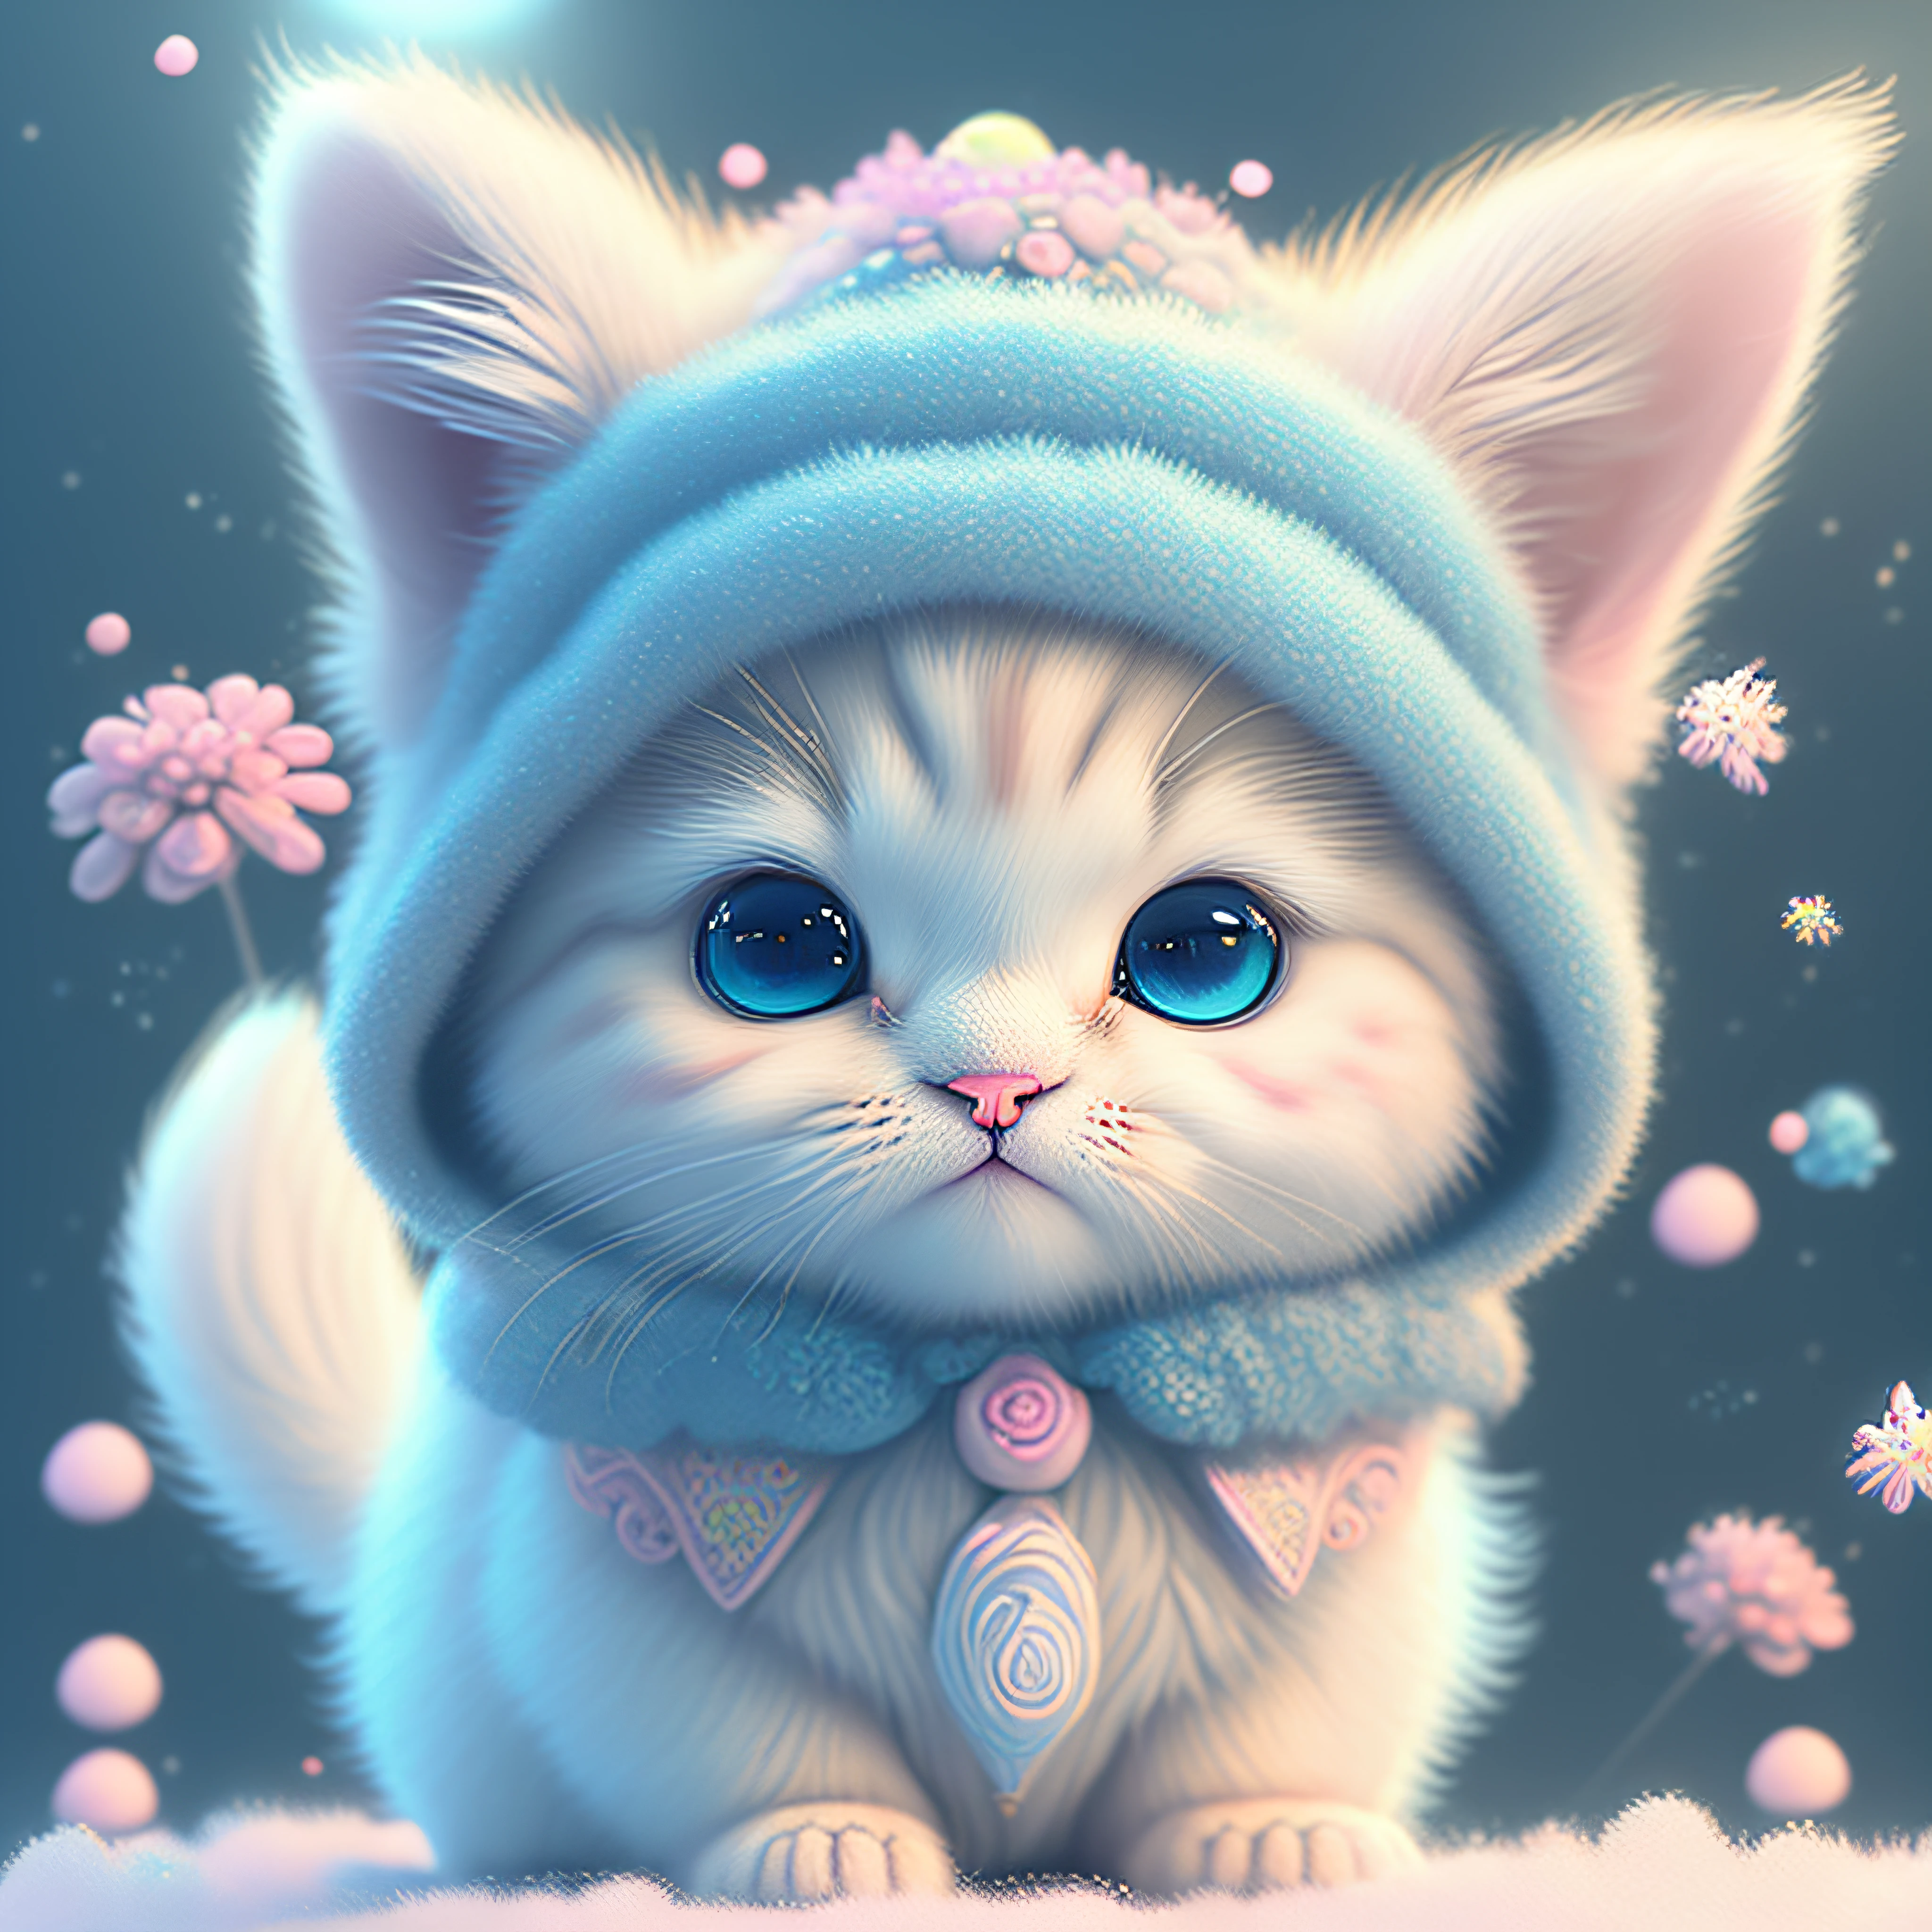 En este arte CG ultradetallado, El adorable gatito rodeado de flores florales., Colores pastel y neón, mejor calidad, alta resolución, detalles intrincados, Fantasía, Animales bonitos